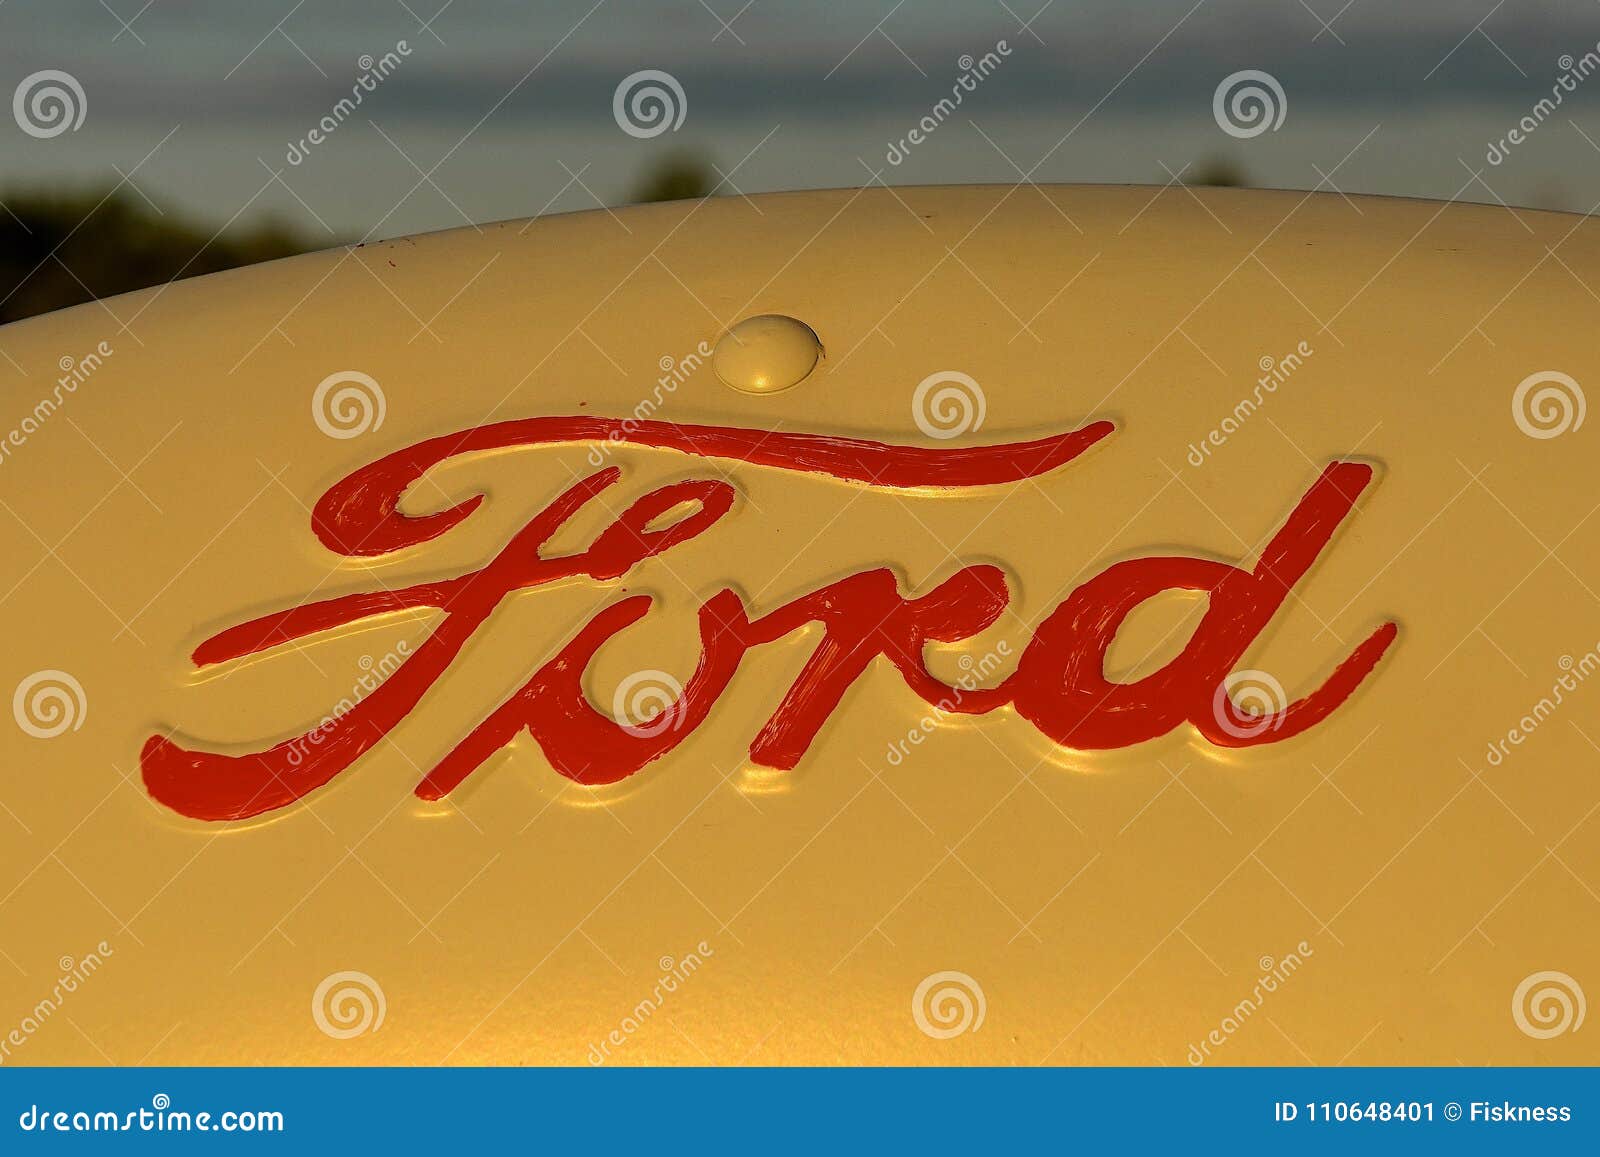 Ford logo in på en traktor. ISABEL SOUTH DAKOTA, Juni 22, 2017: Den rostiga logoen för den Ford traktorhuven är en produkt av Ford Motor Company som lokaliseras i Dearborn, Michigan startade vid Henry Ford och inkorporerade på Juni 16, 1903